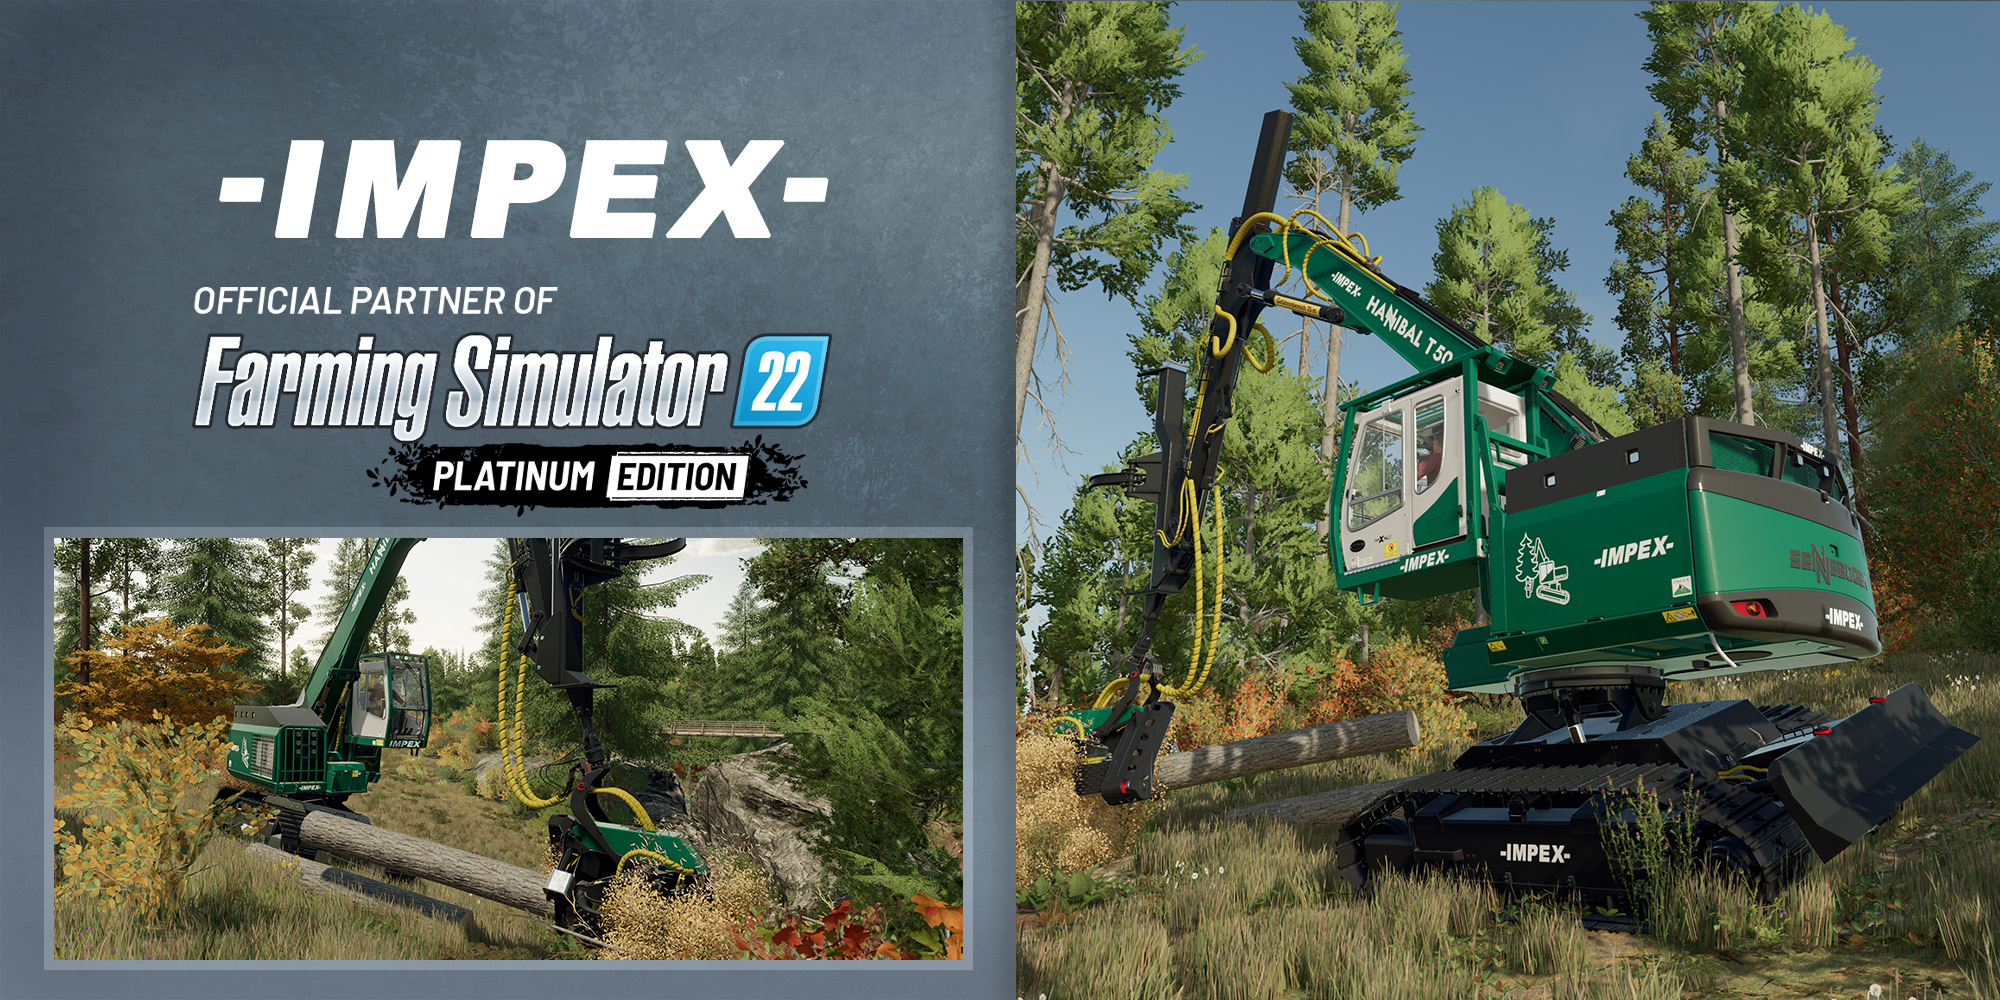 The Farming Simulator features Impex 